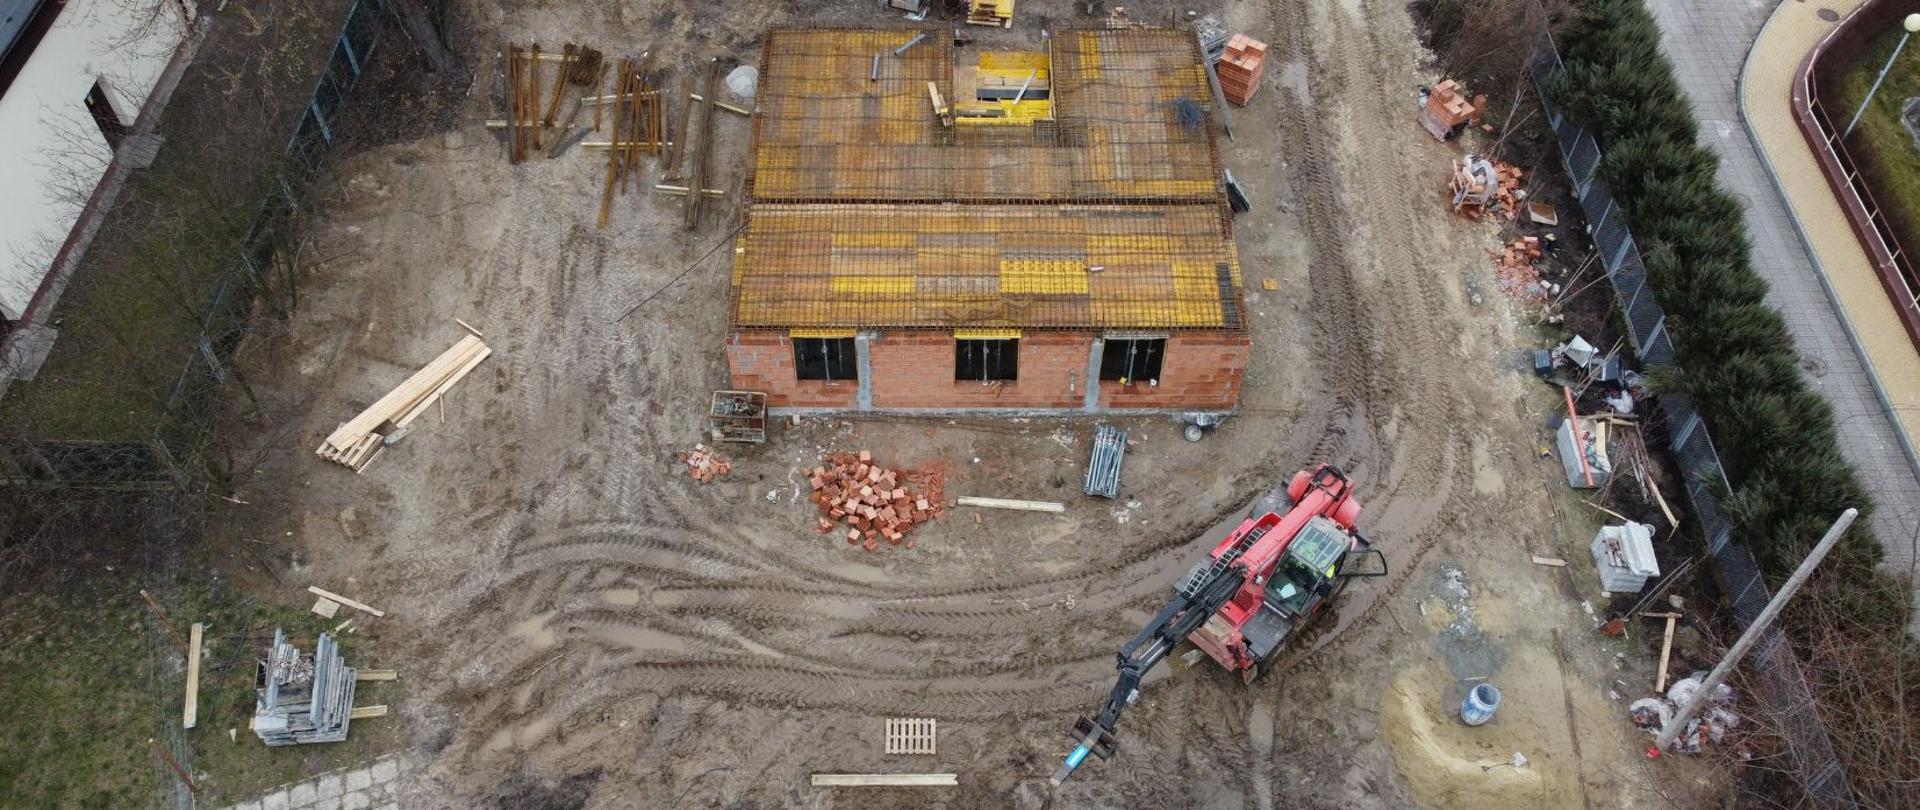 Plac budowy - ujęcie z drona.